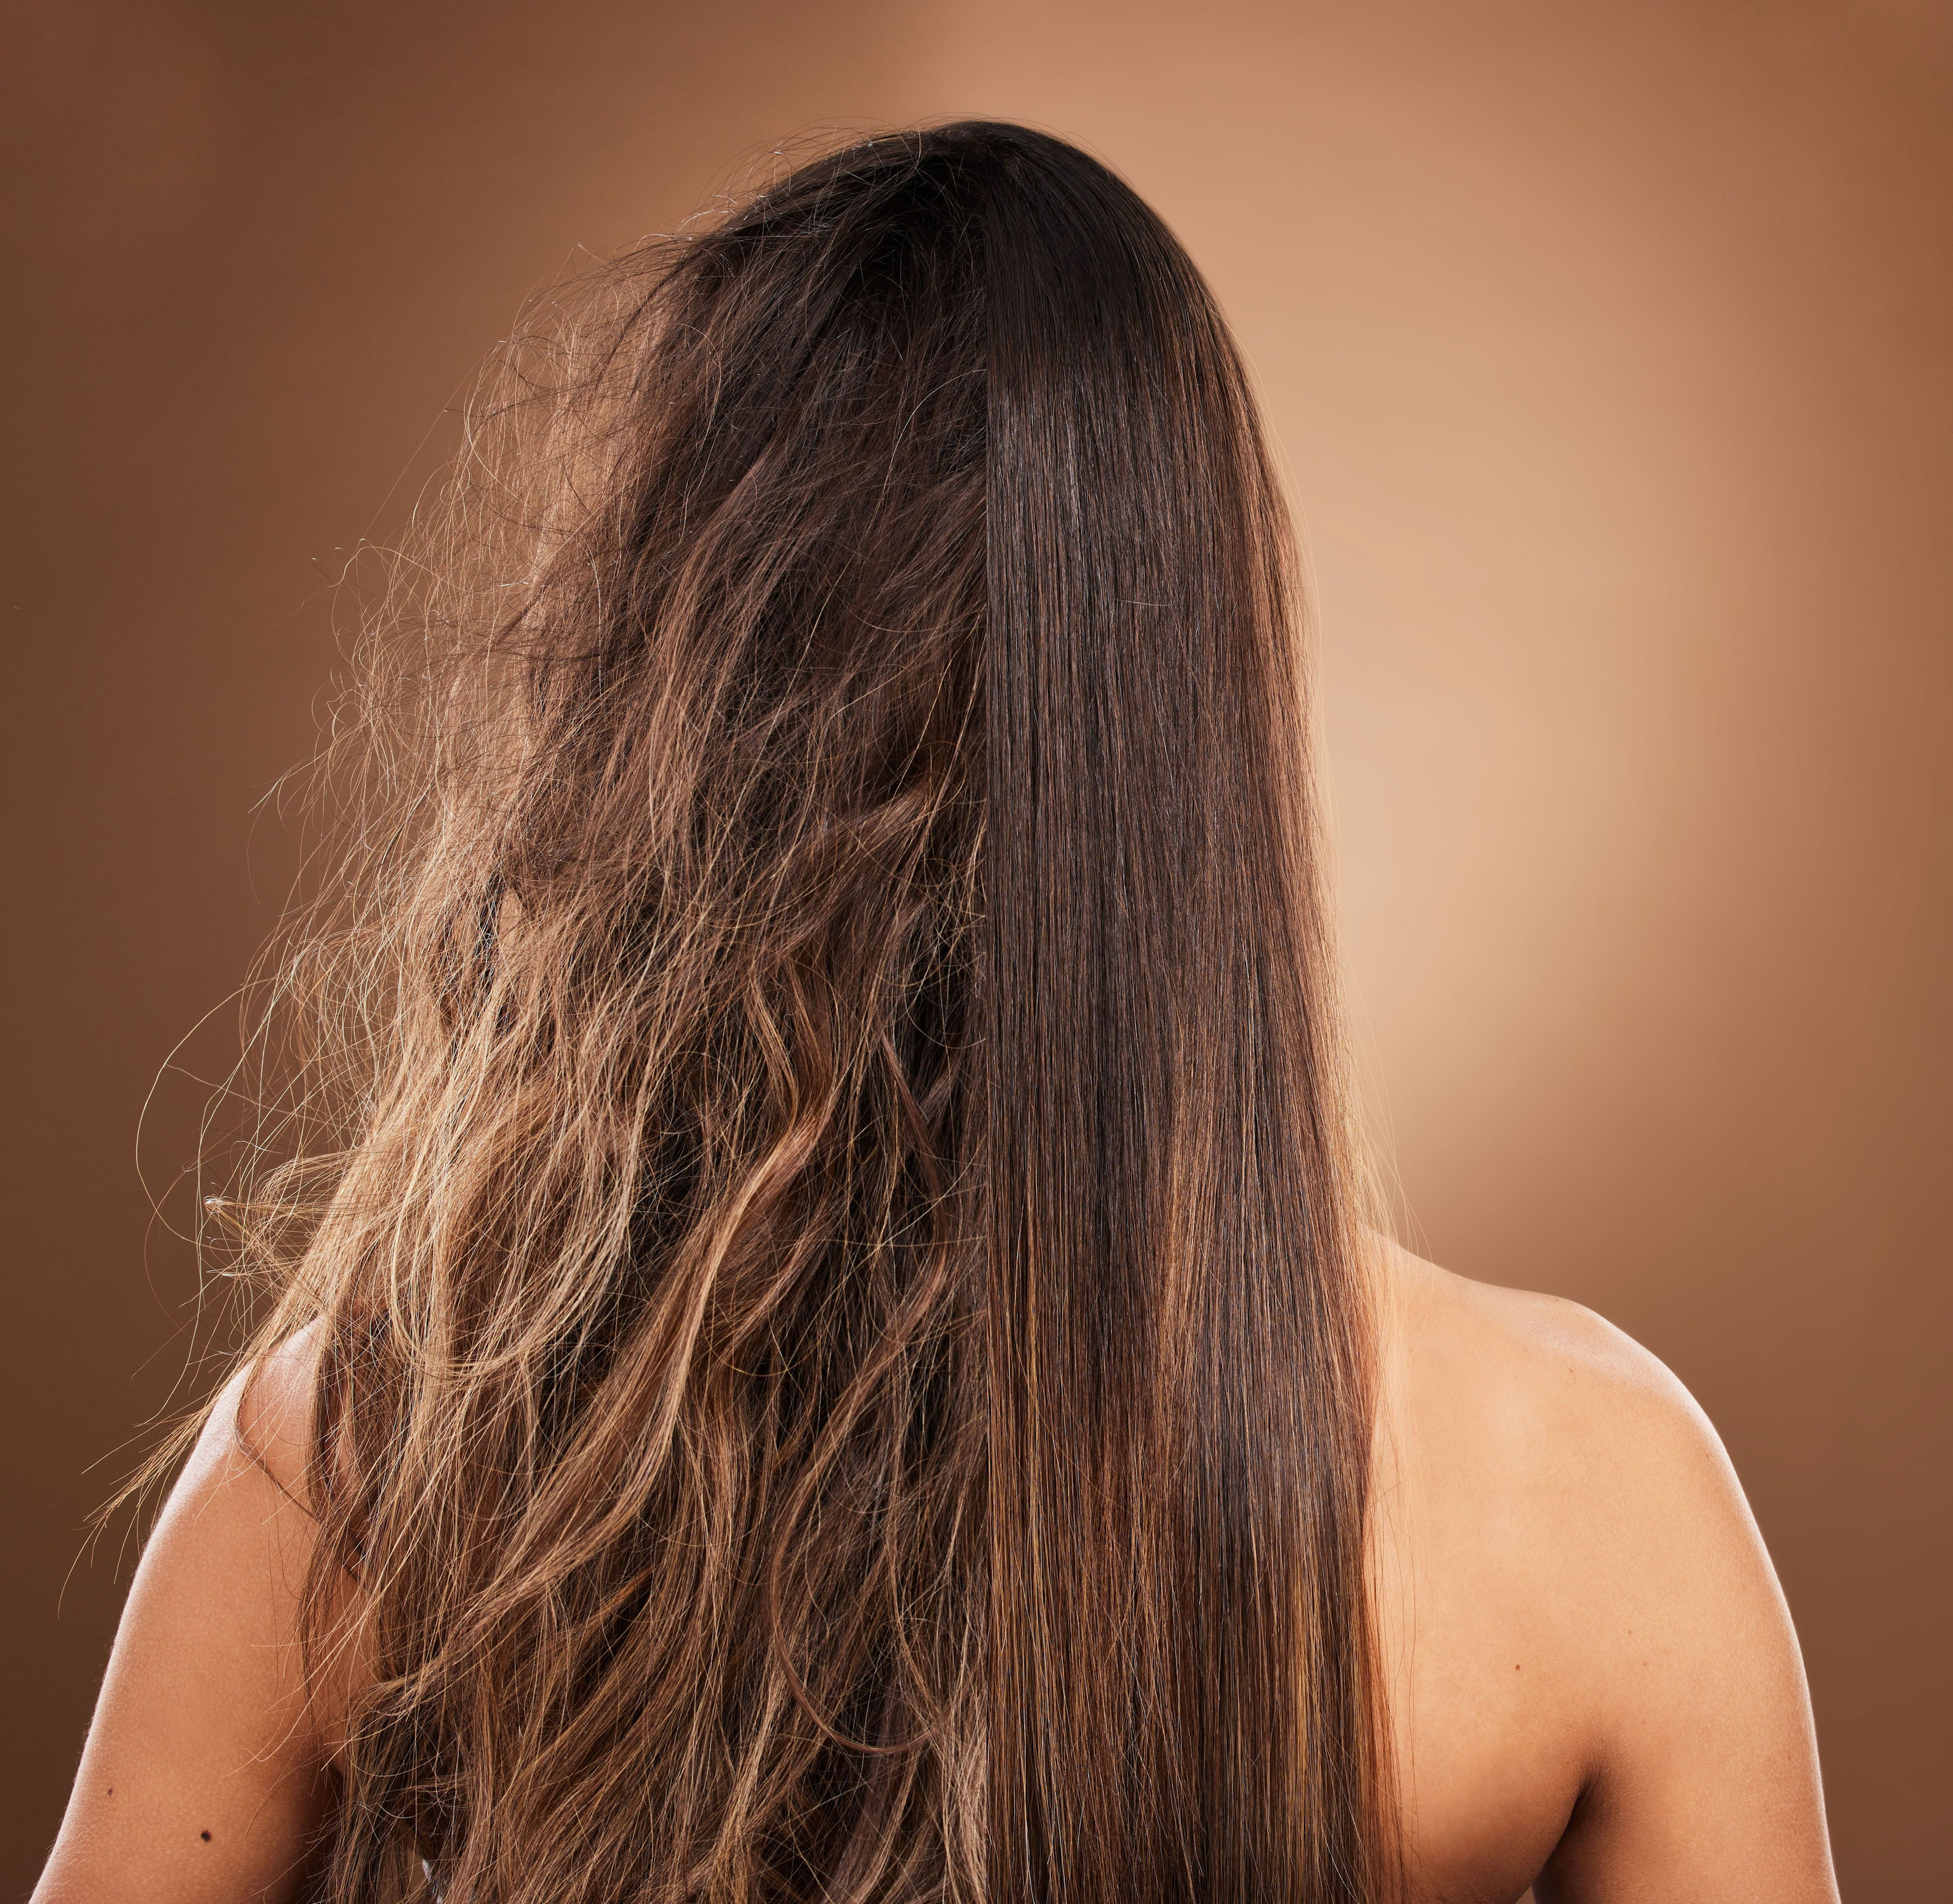 pelo castigado: los trucazos que no fallan para reparar tu cabello sin gastar una fortuna